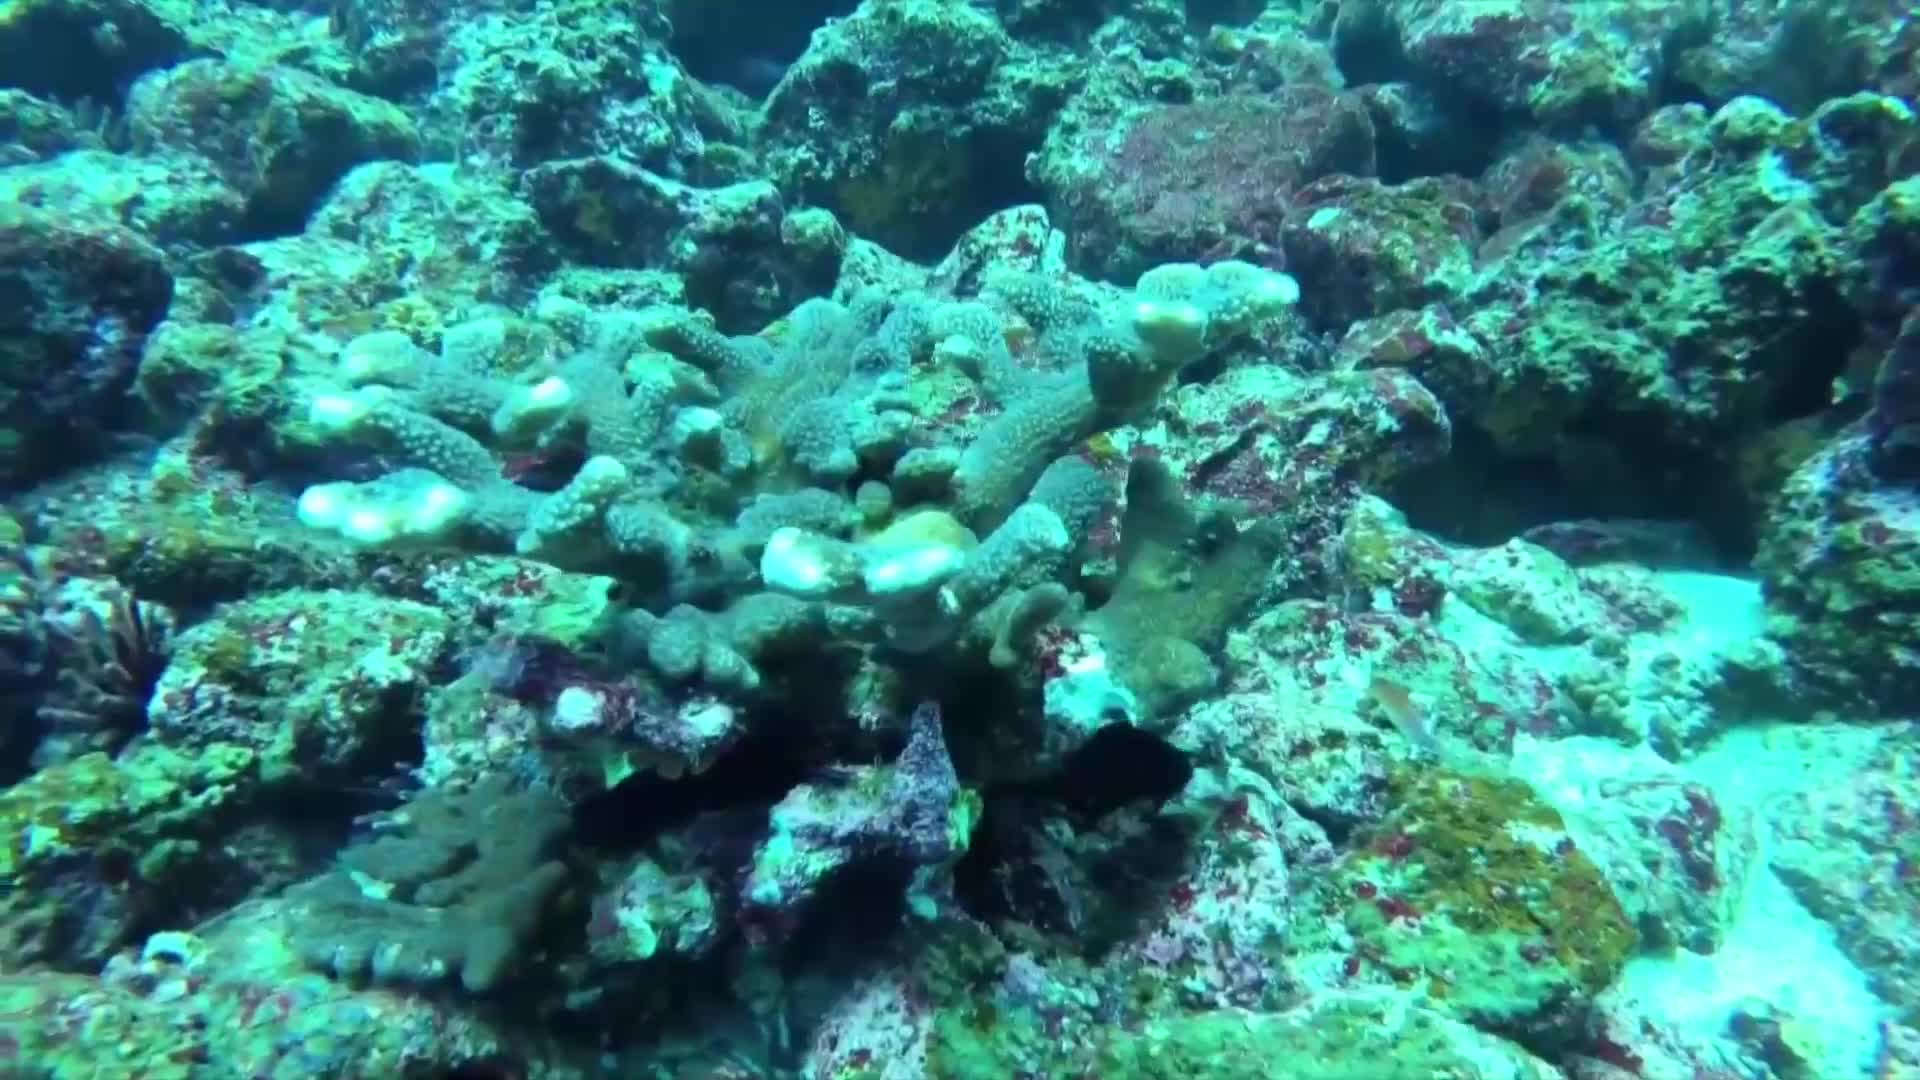 Опитват да възстановят коралите край Галапагос (ВИДЕО)